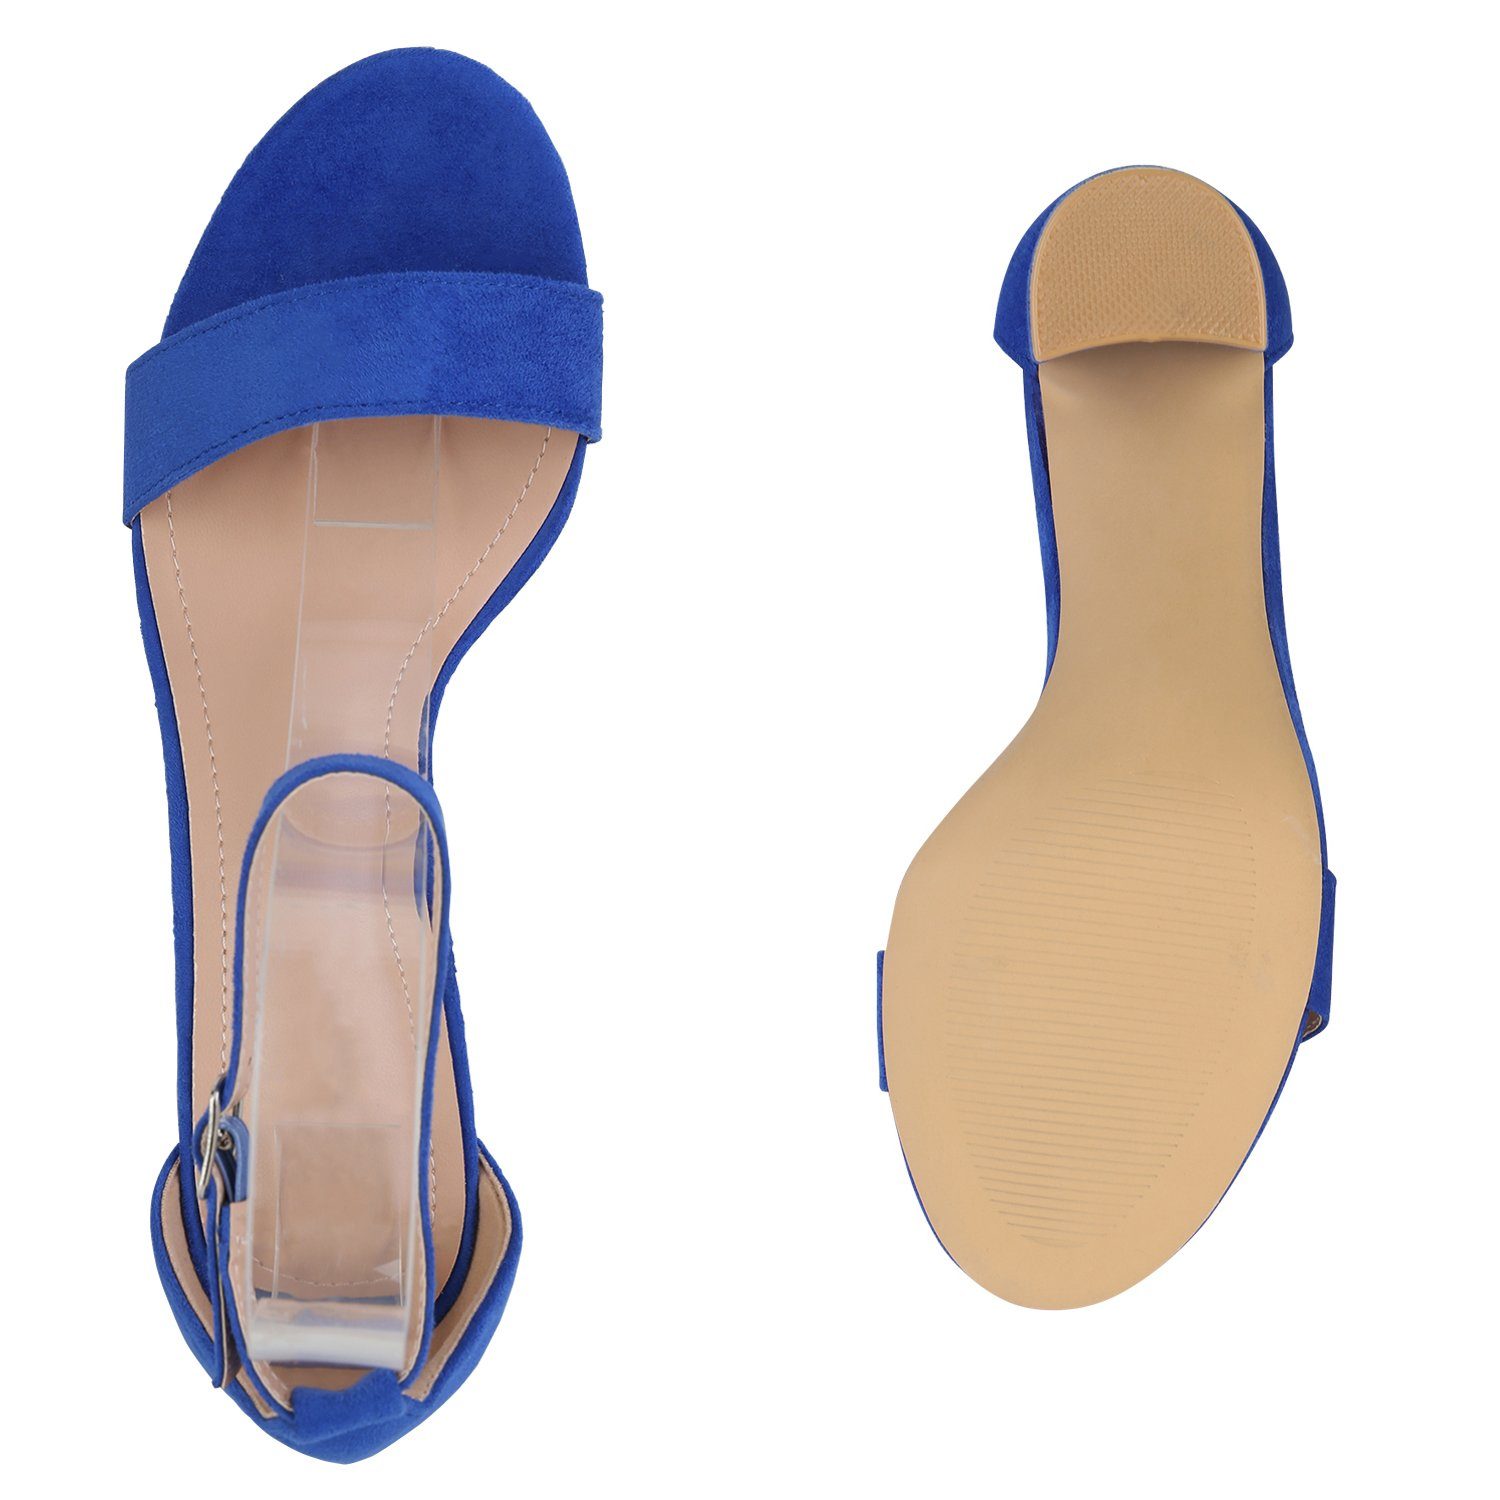 HILL VAN Blau 840051 Bequeme Sandalette Schuhe